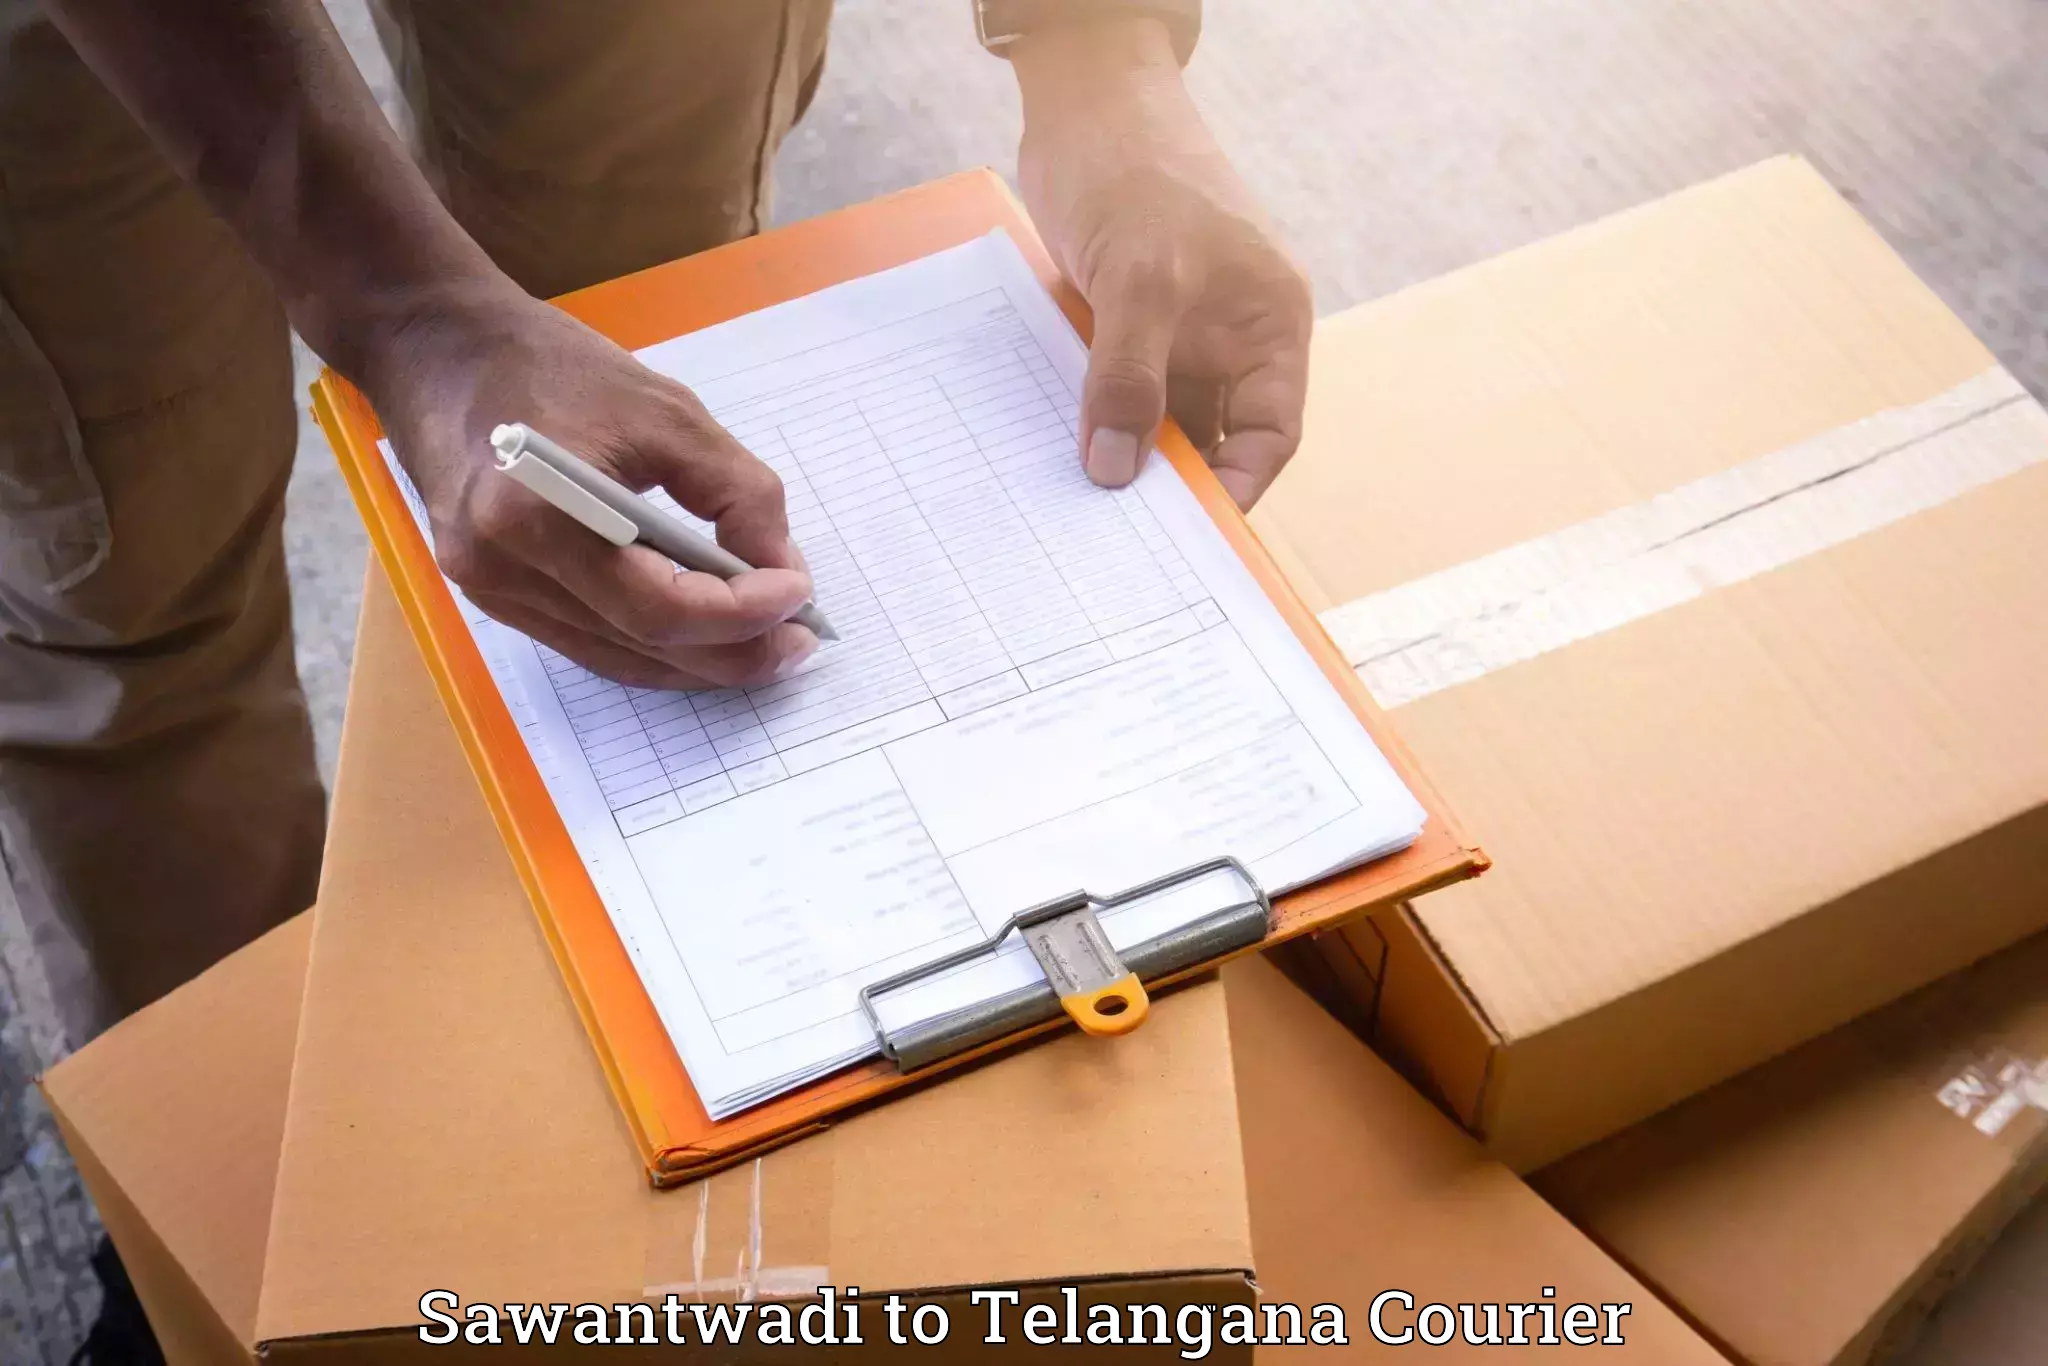 Furniture moving experts Sawantwadi to Gollapalli